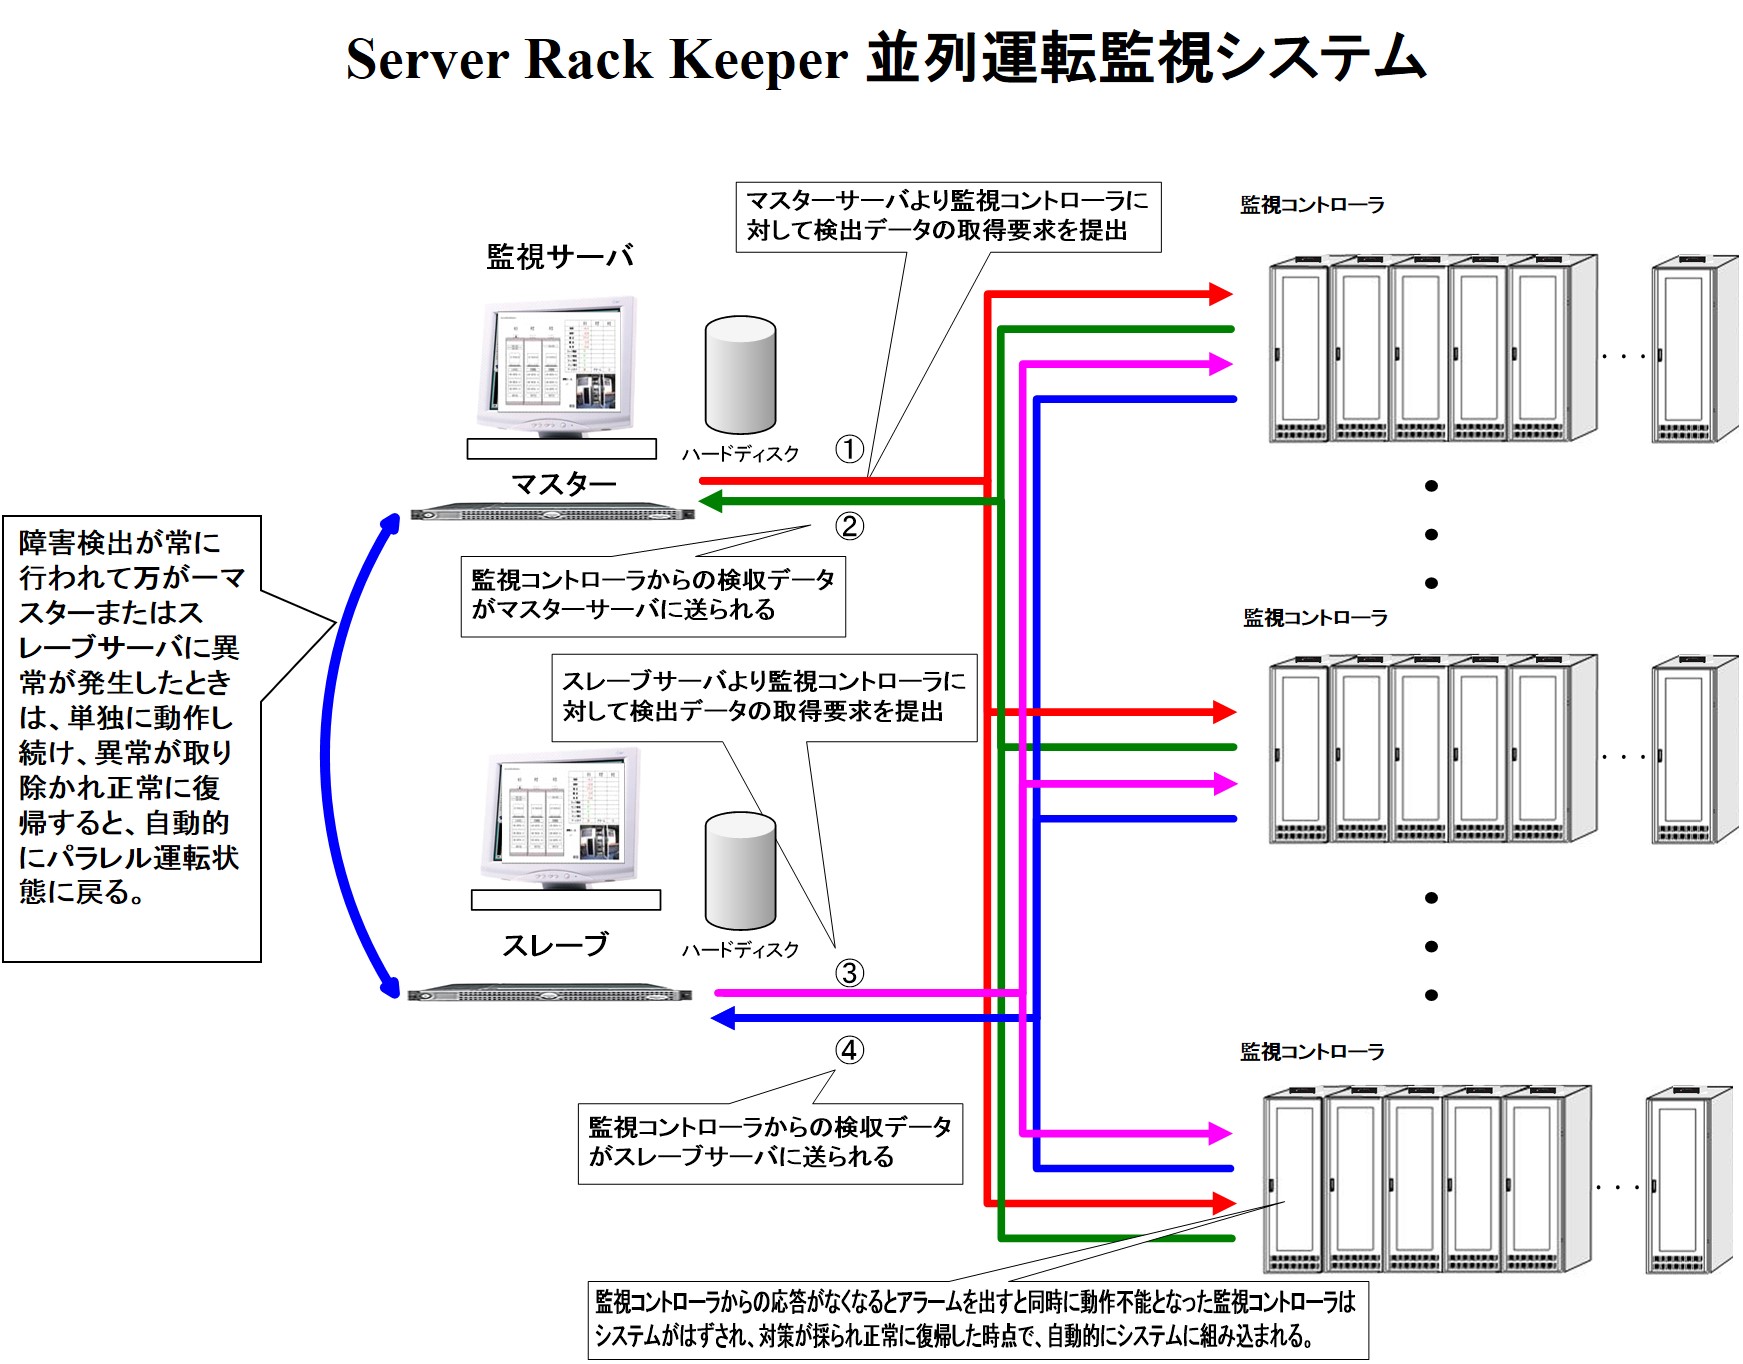 Server Rack Keeper 並列運転監視システム
